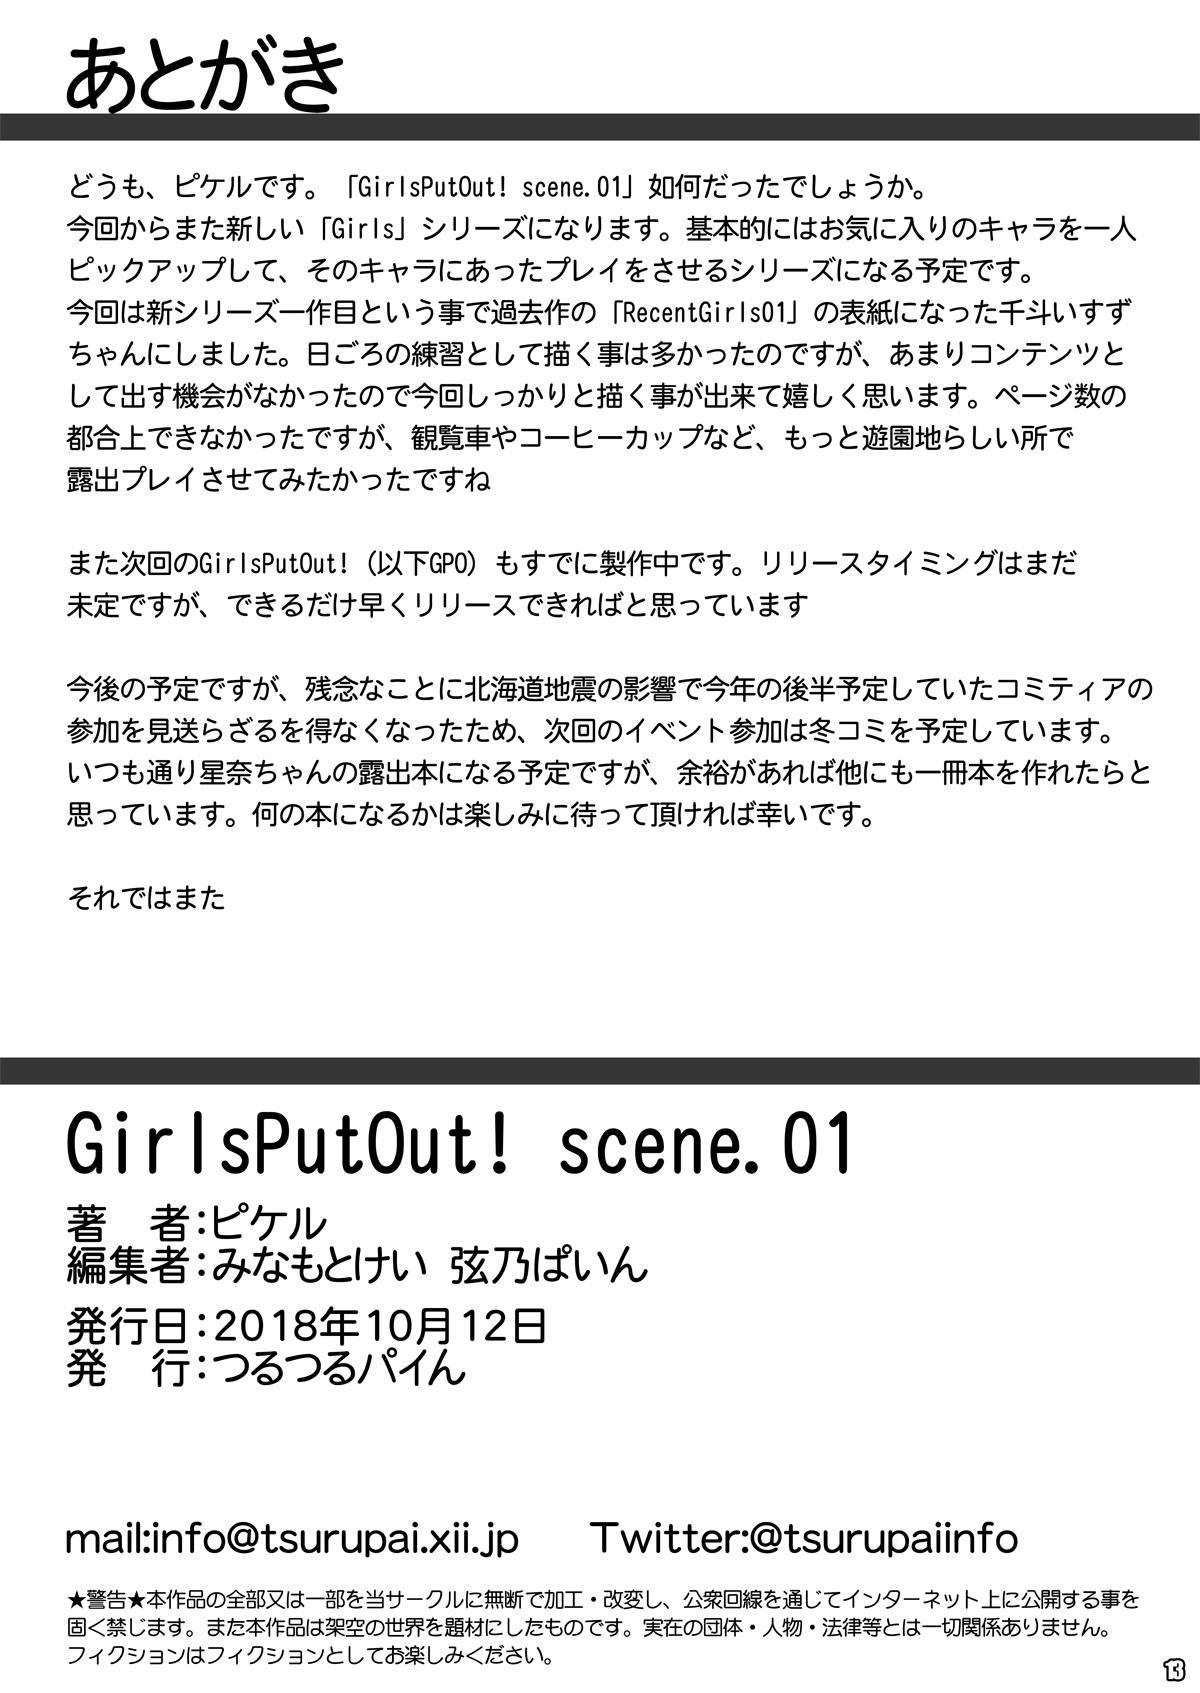 [つるつるパイん (ピケル)] GirlsPutOut! scene.01 (甘城ブリリアントパーク)